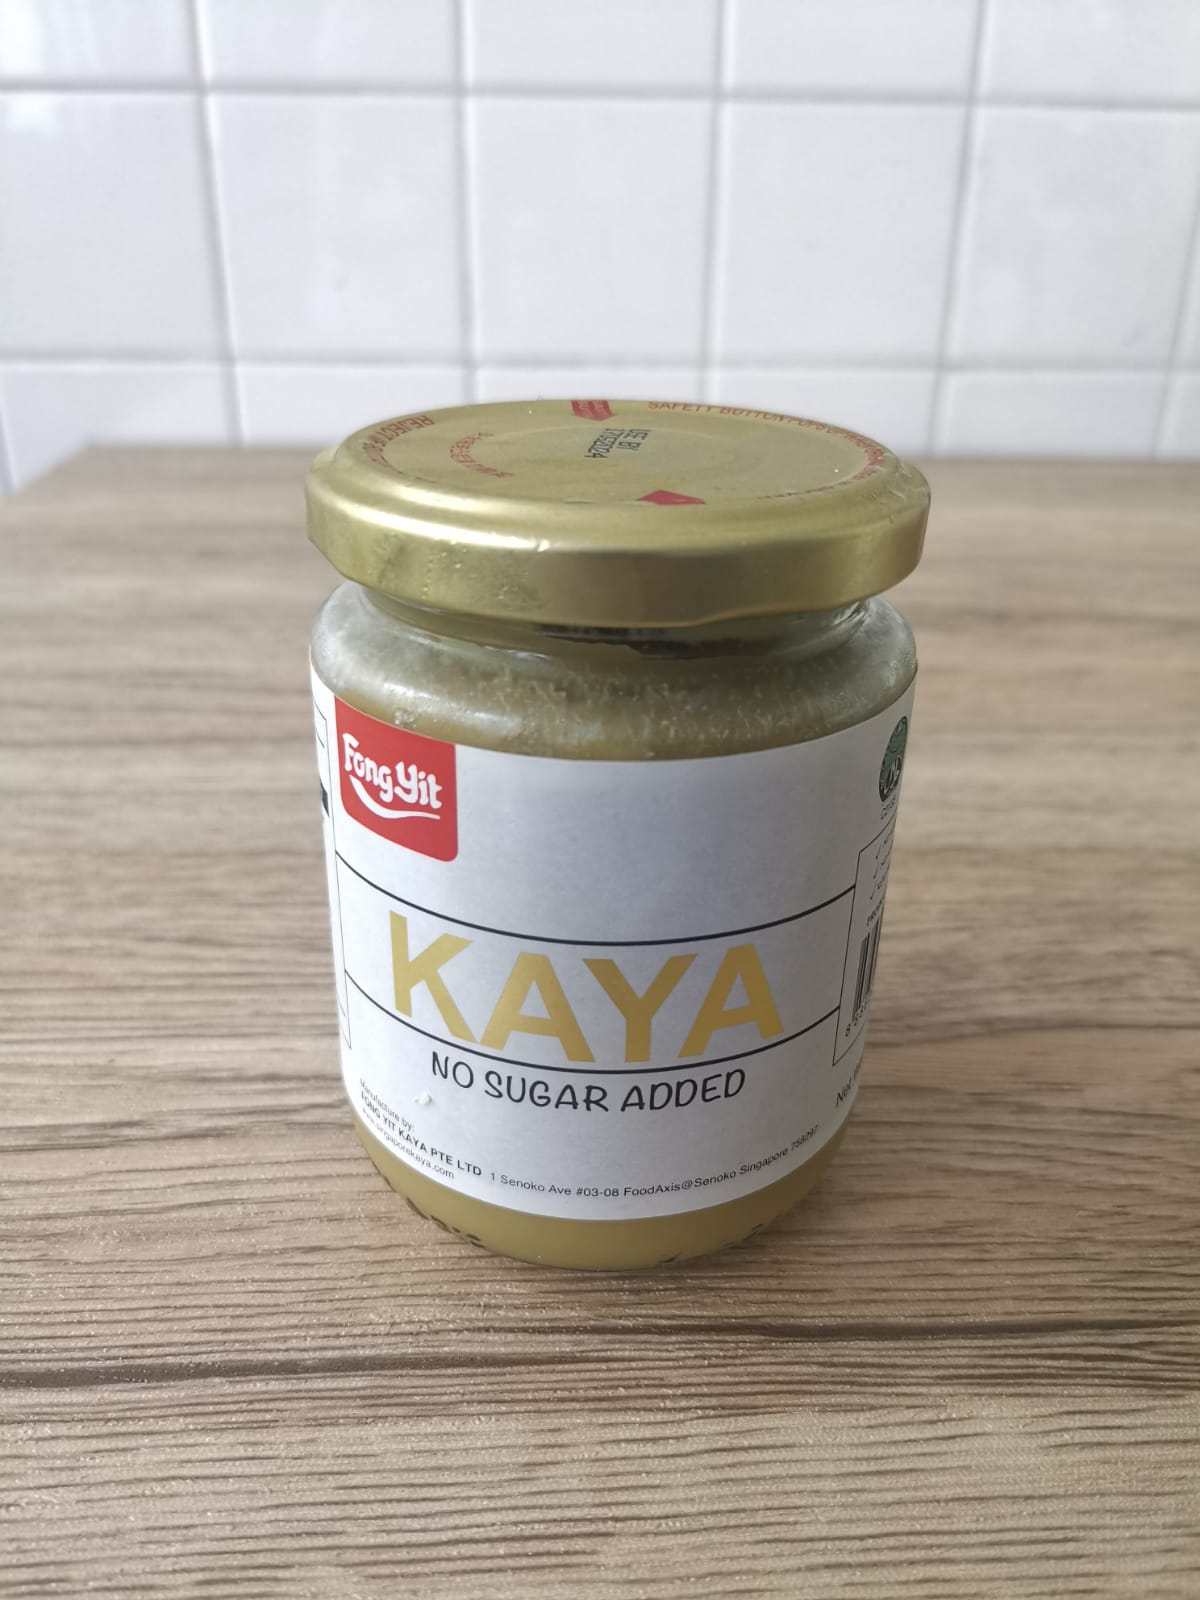 Keto and diabetic-friendly low gi kaya spread